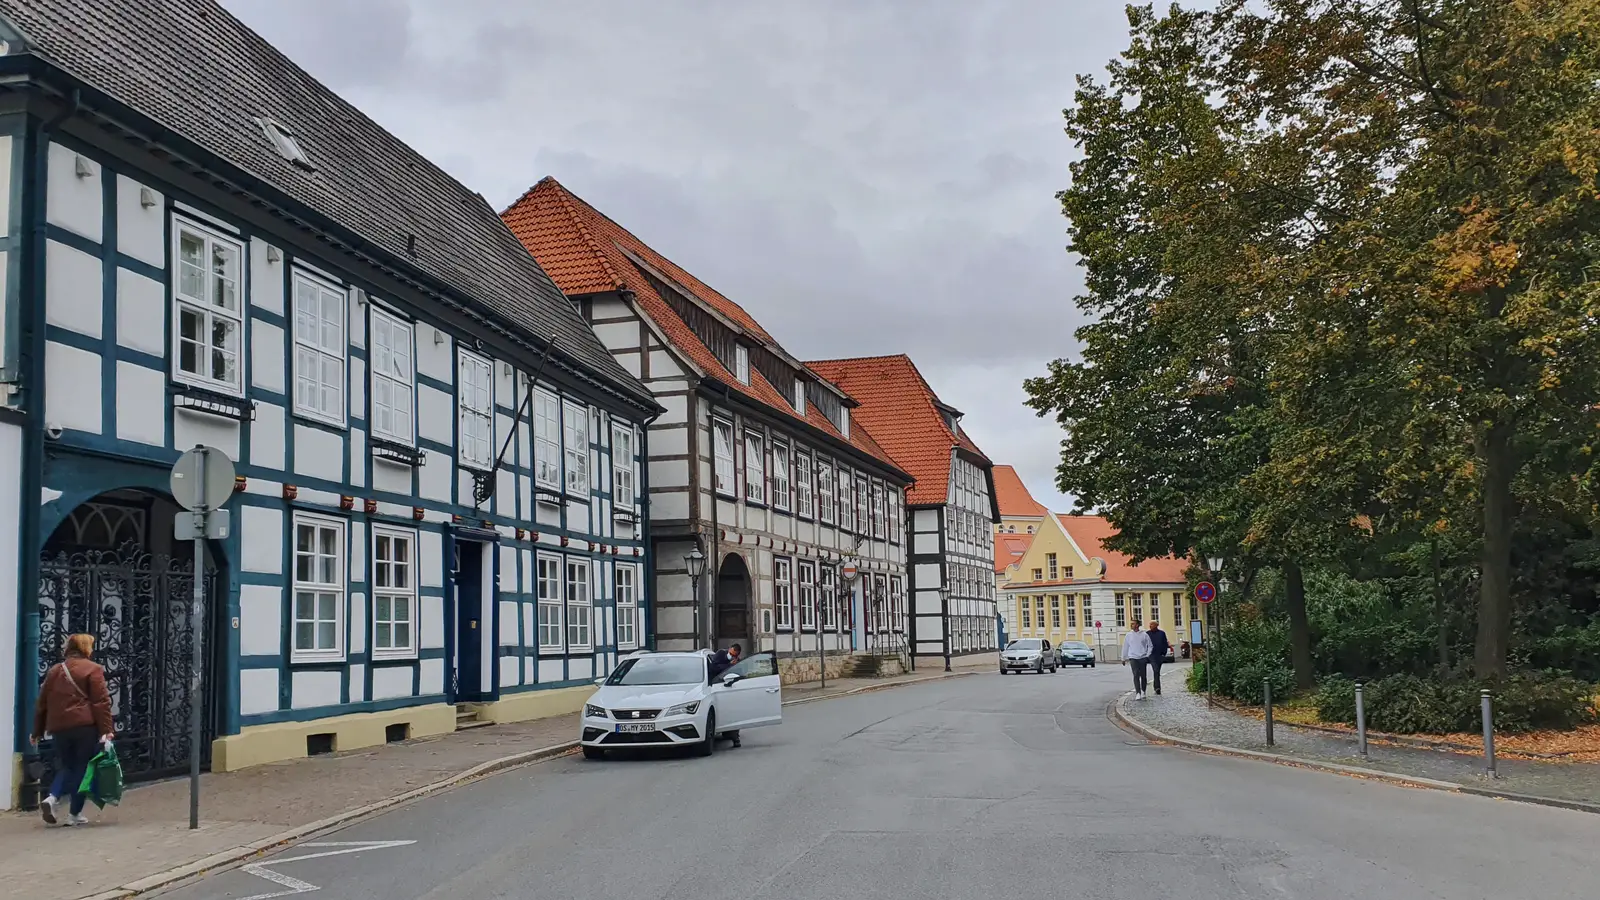 Sehenswürdigkeiten von Herford, Teutoburger Wald, Altstadt von Herford, Fachwerk in Ostwestfalen